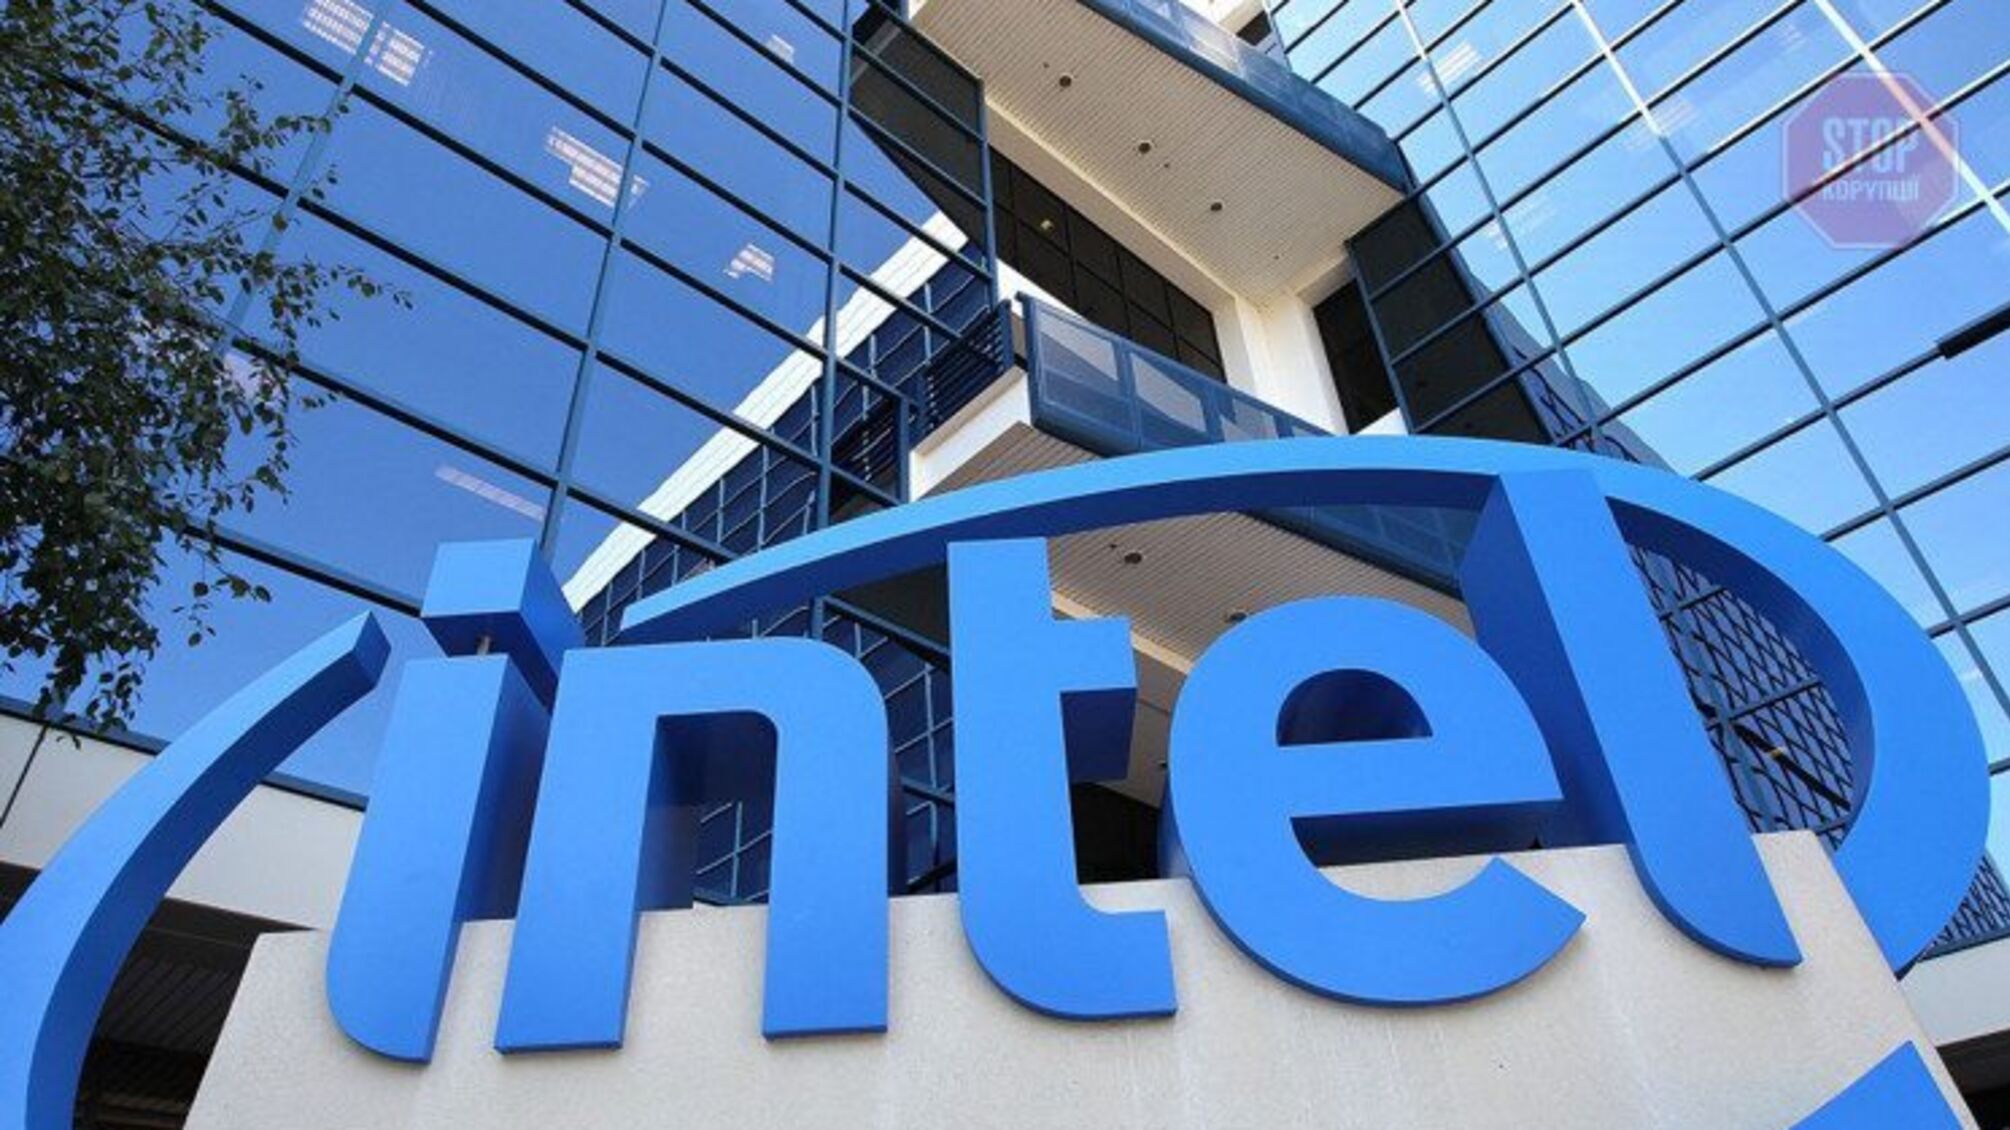 Технологический гигант Intel покинул рынок России и Беларуси